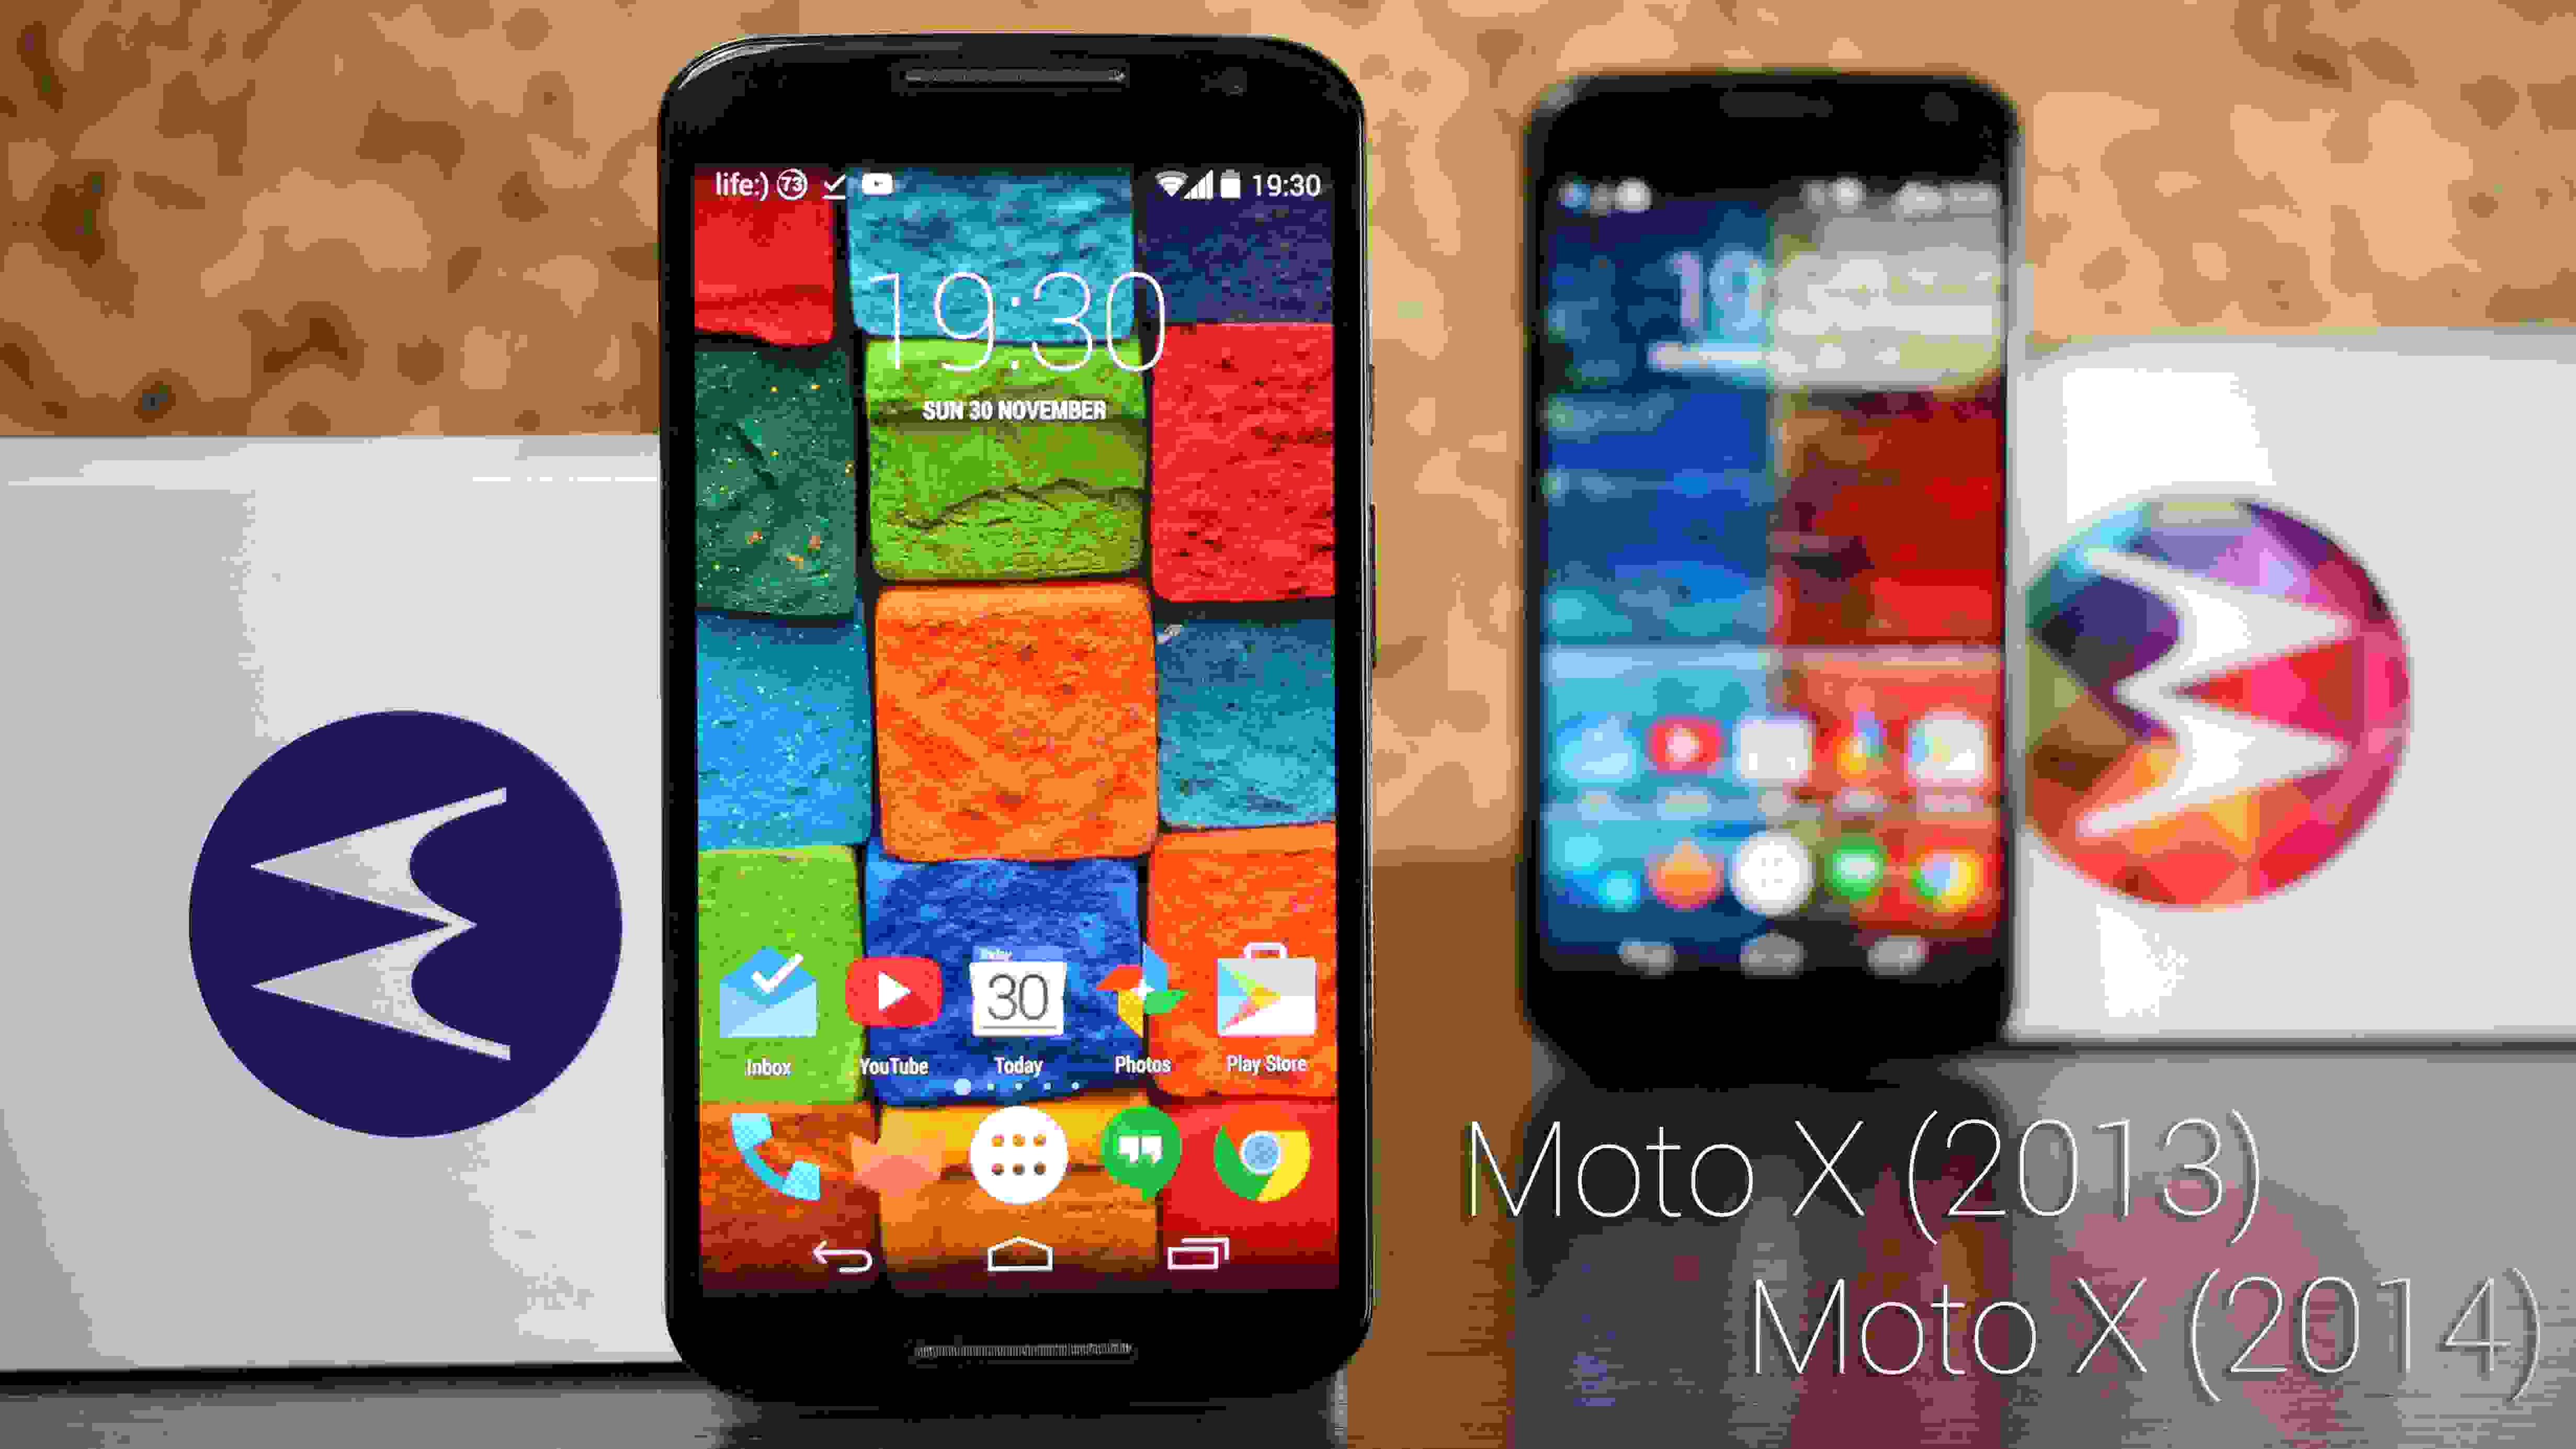 Moto X (2013) VS Moto X (2014)